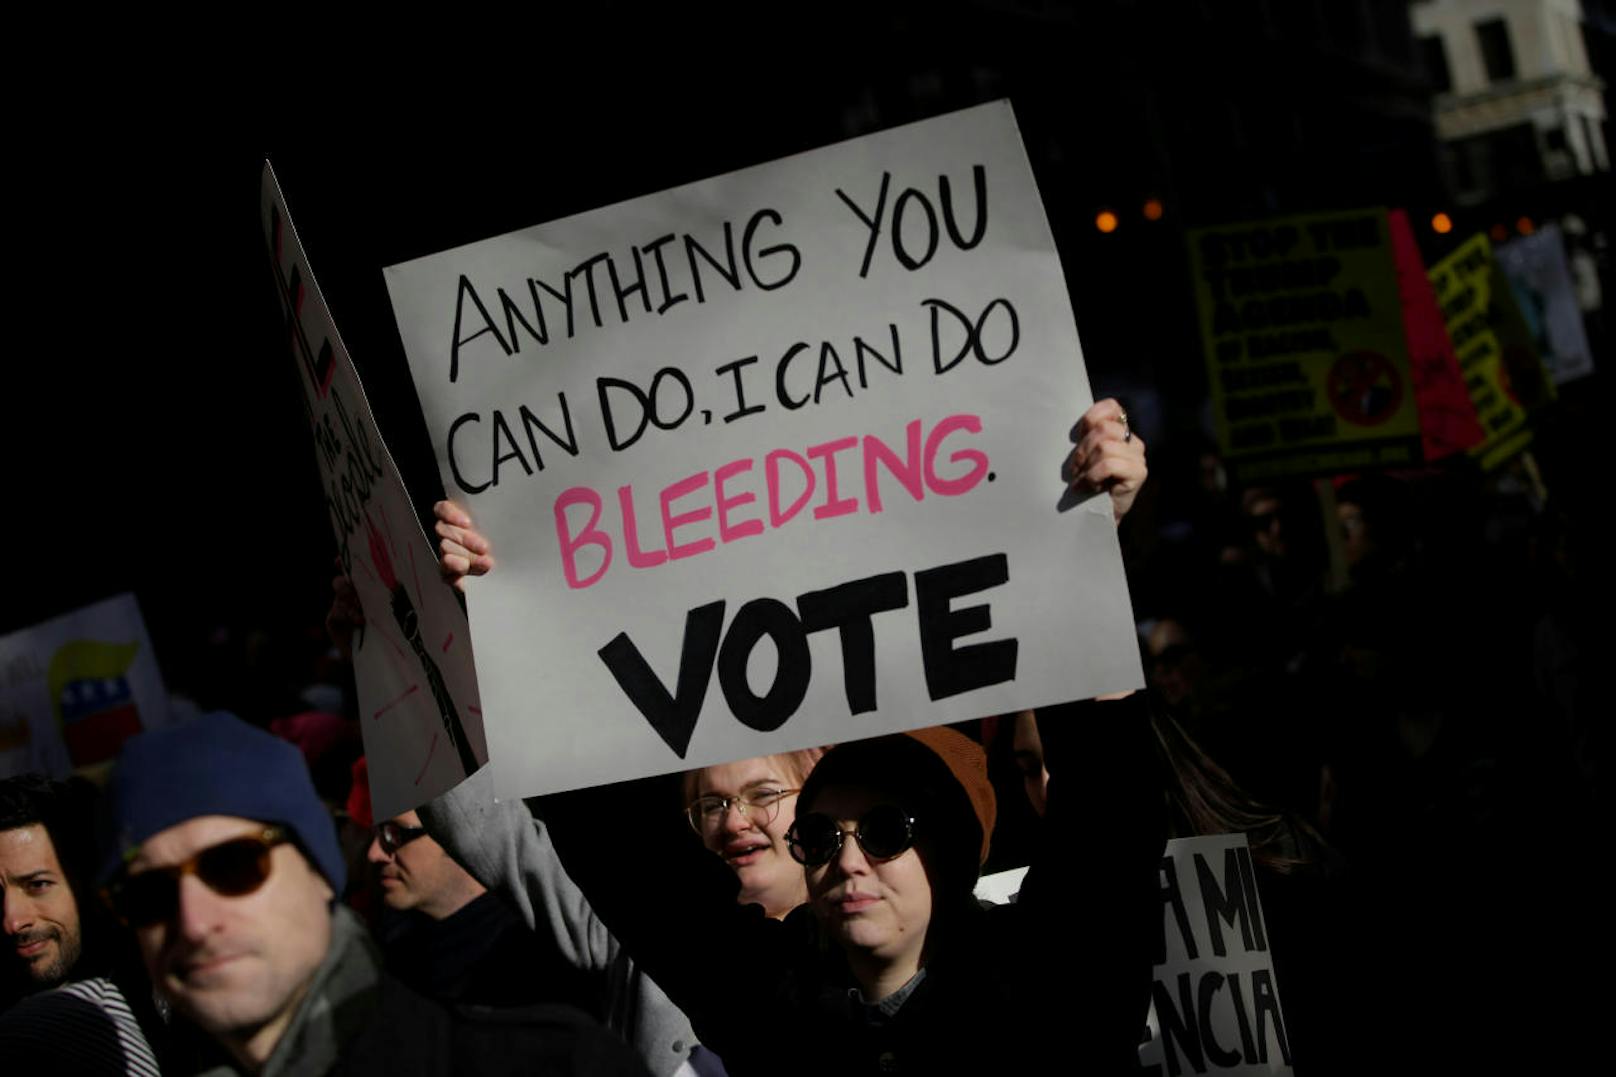 "Alles was du kannst, kann ich während ich blute - Wähl!" Transparent beim Women's March im Chicago